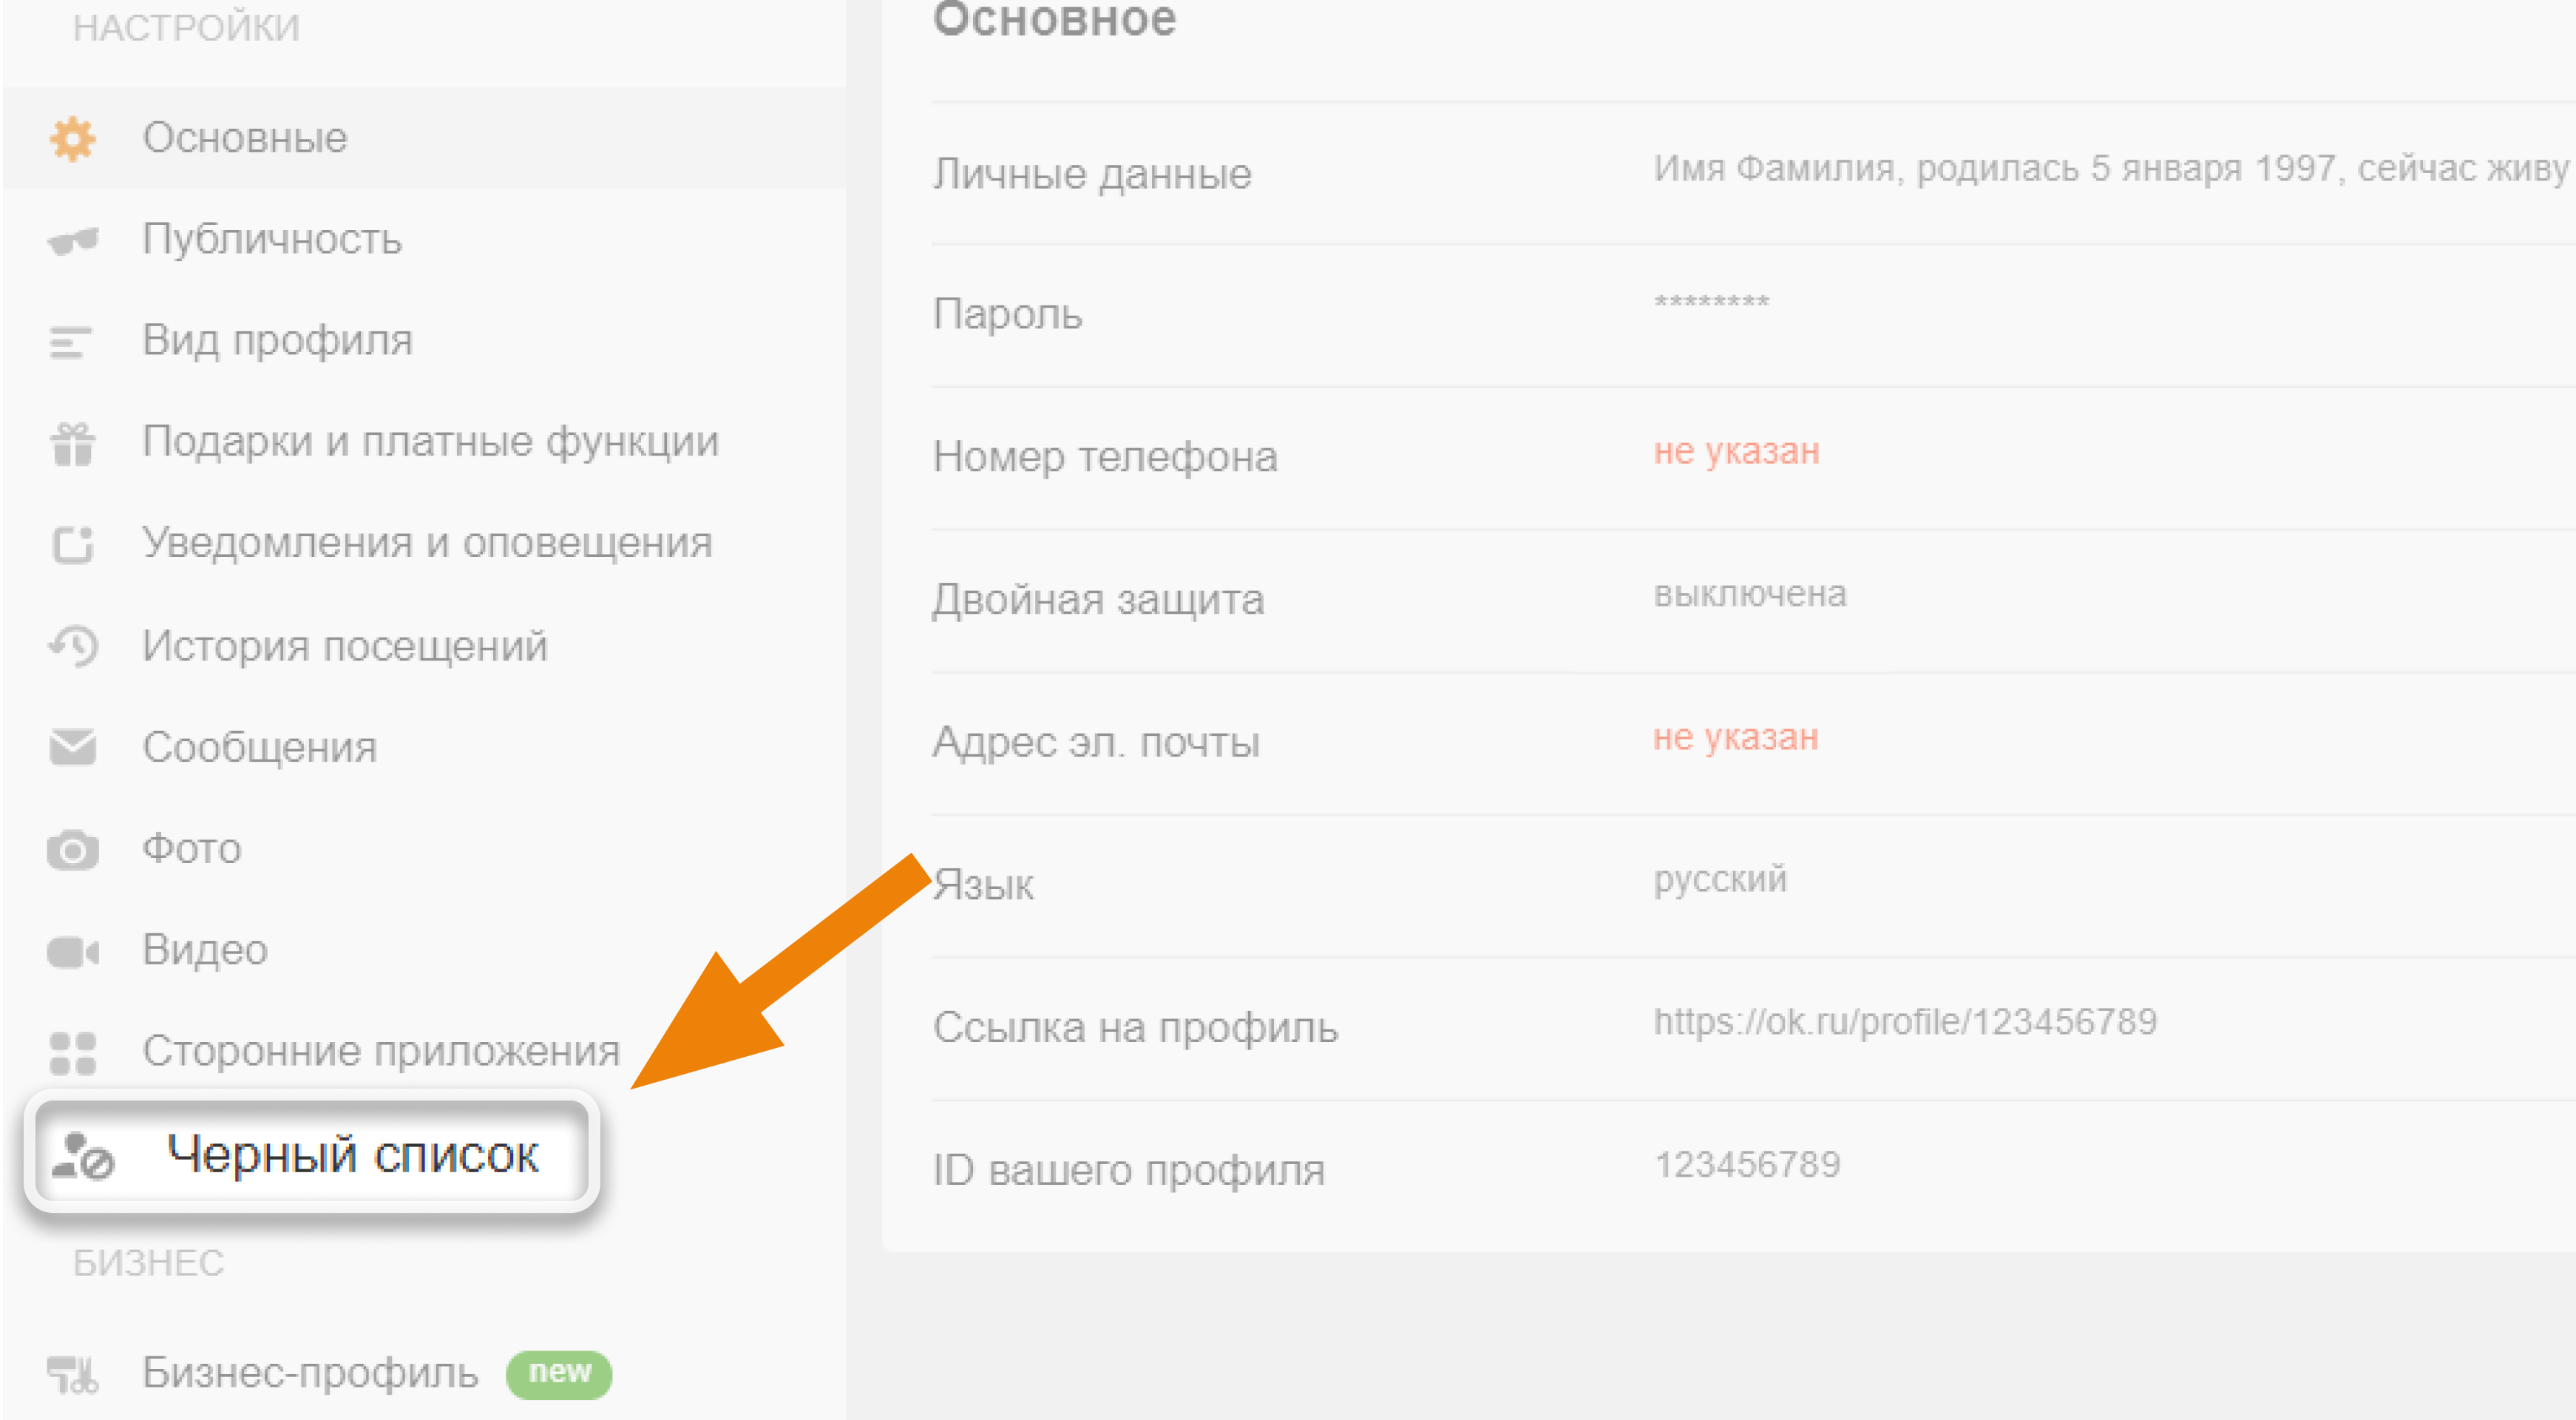 Что будет видеть заблокированный пользователь в Одноклассниках?